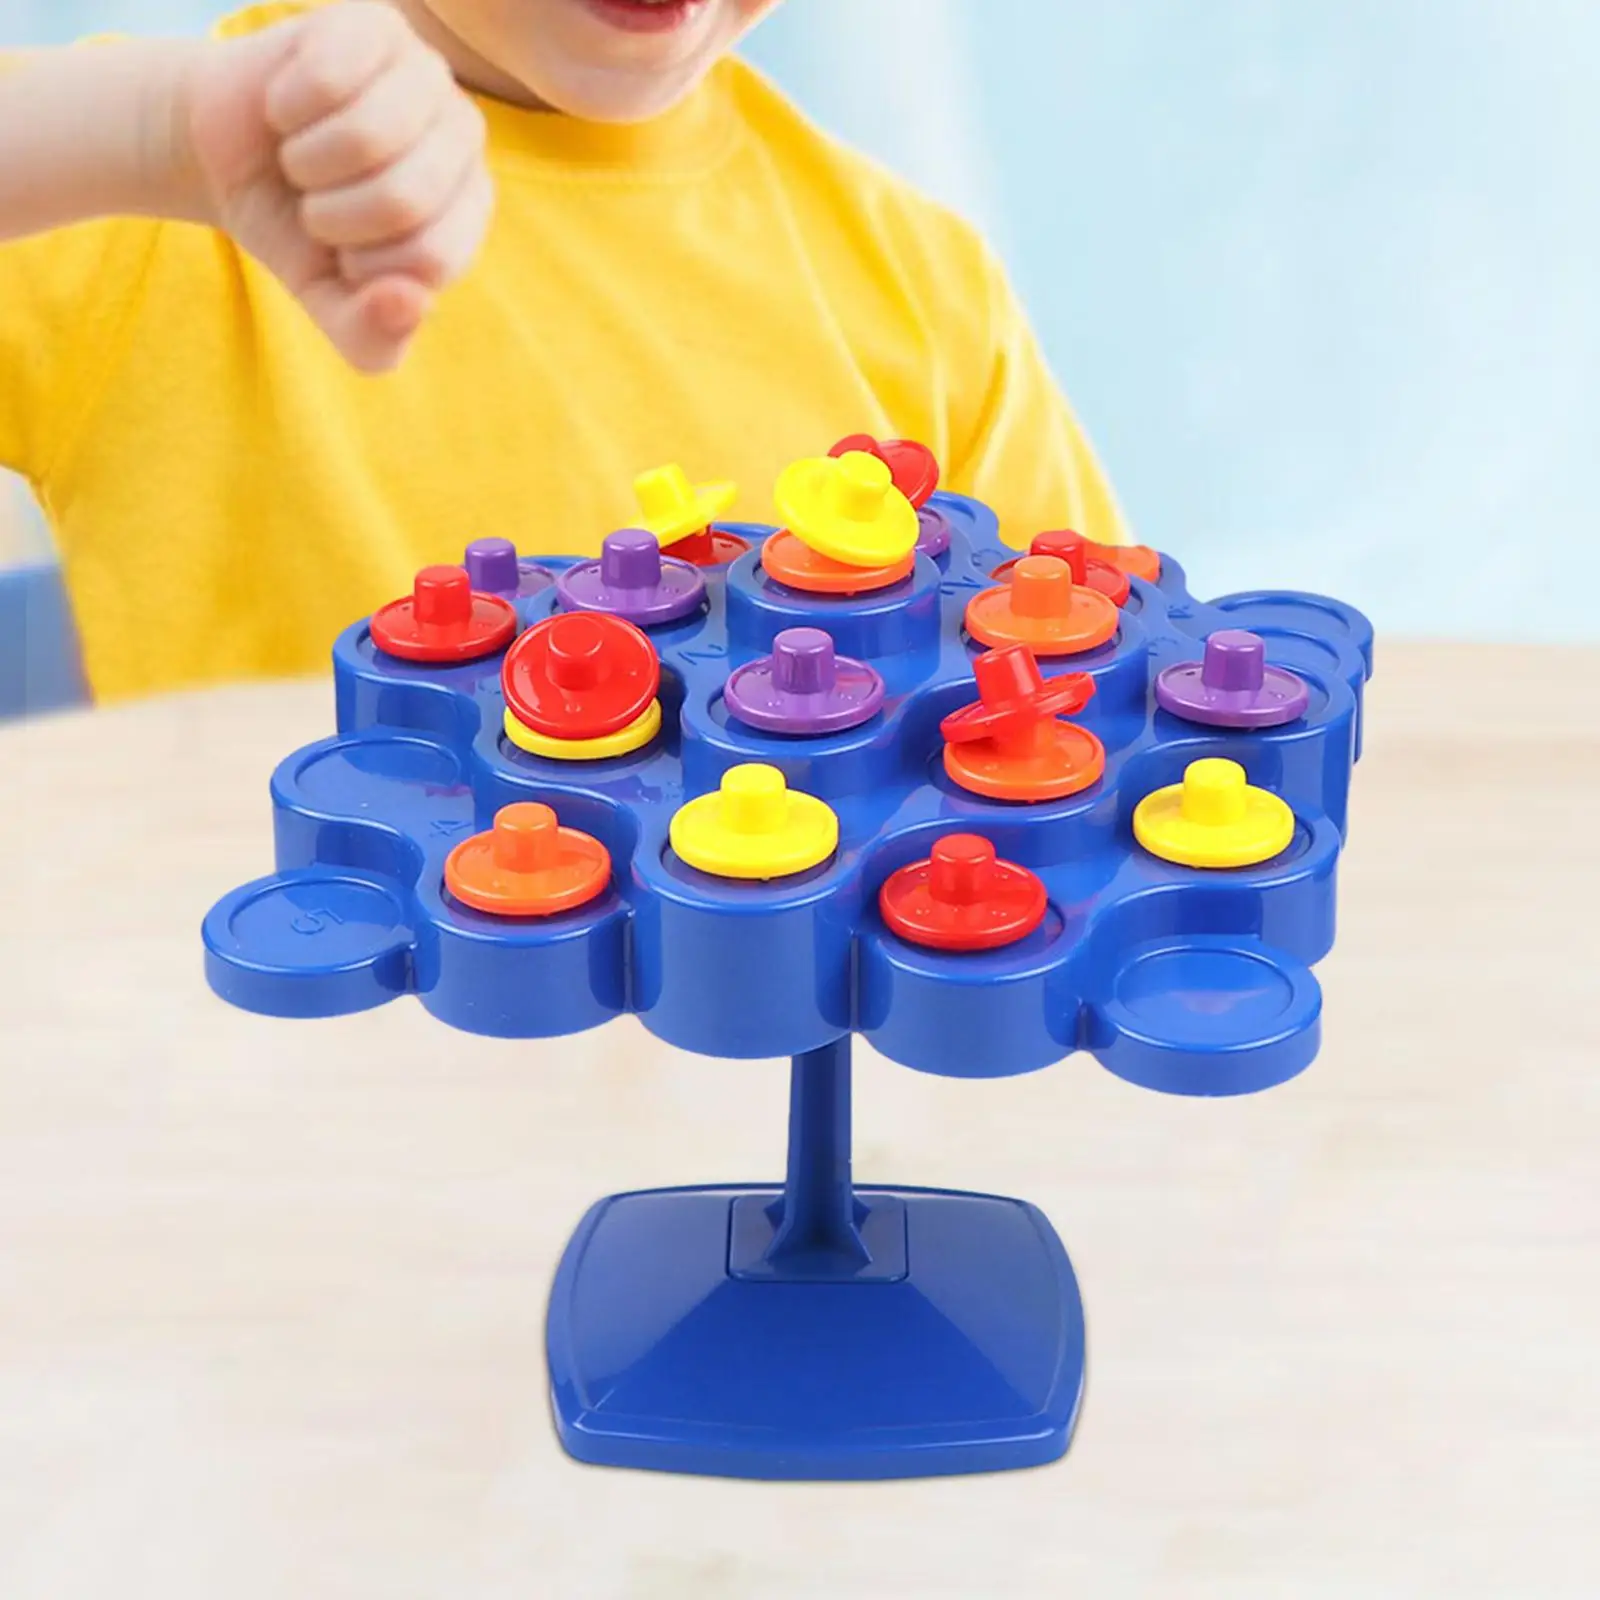 

Строительные блоки, сбалансированная игрушка для дерева, координация рук и глаз, настольная балансировочная игрушка, математическая игра для детей дошкольного возраста